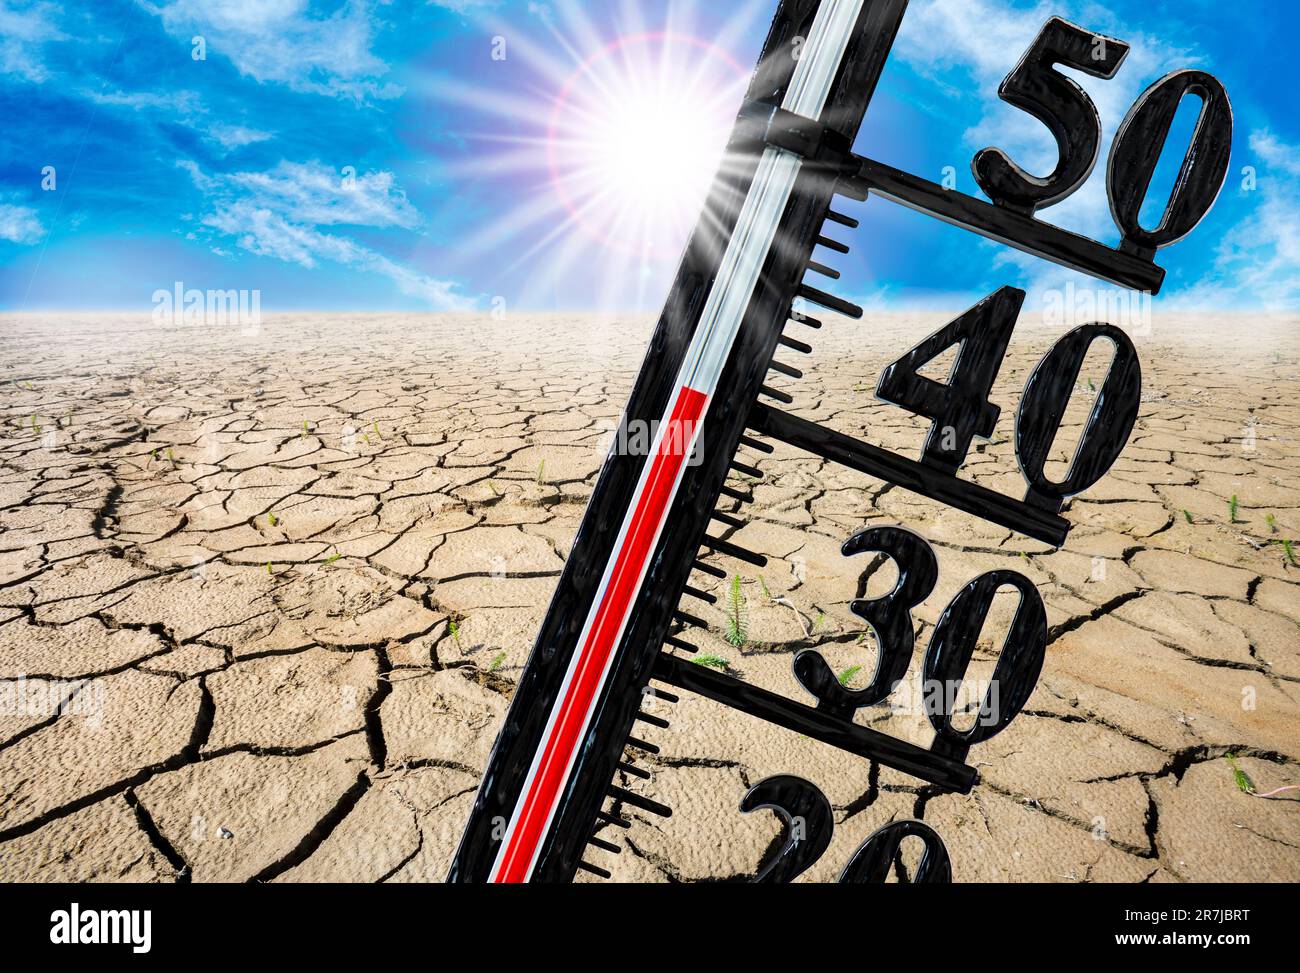 Das Thermometer zeigt hohe Temperaturen in der Sommerhitze mit Trockenheit und Wassermangel im Feld an Stockfoto